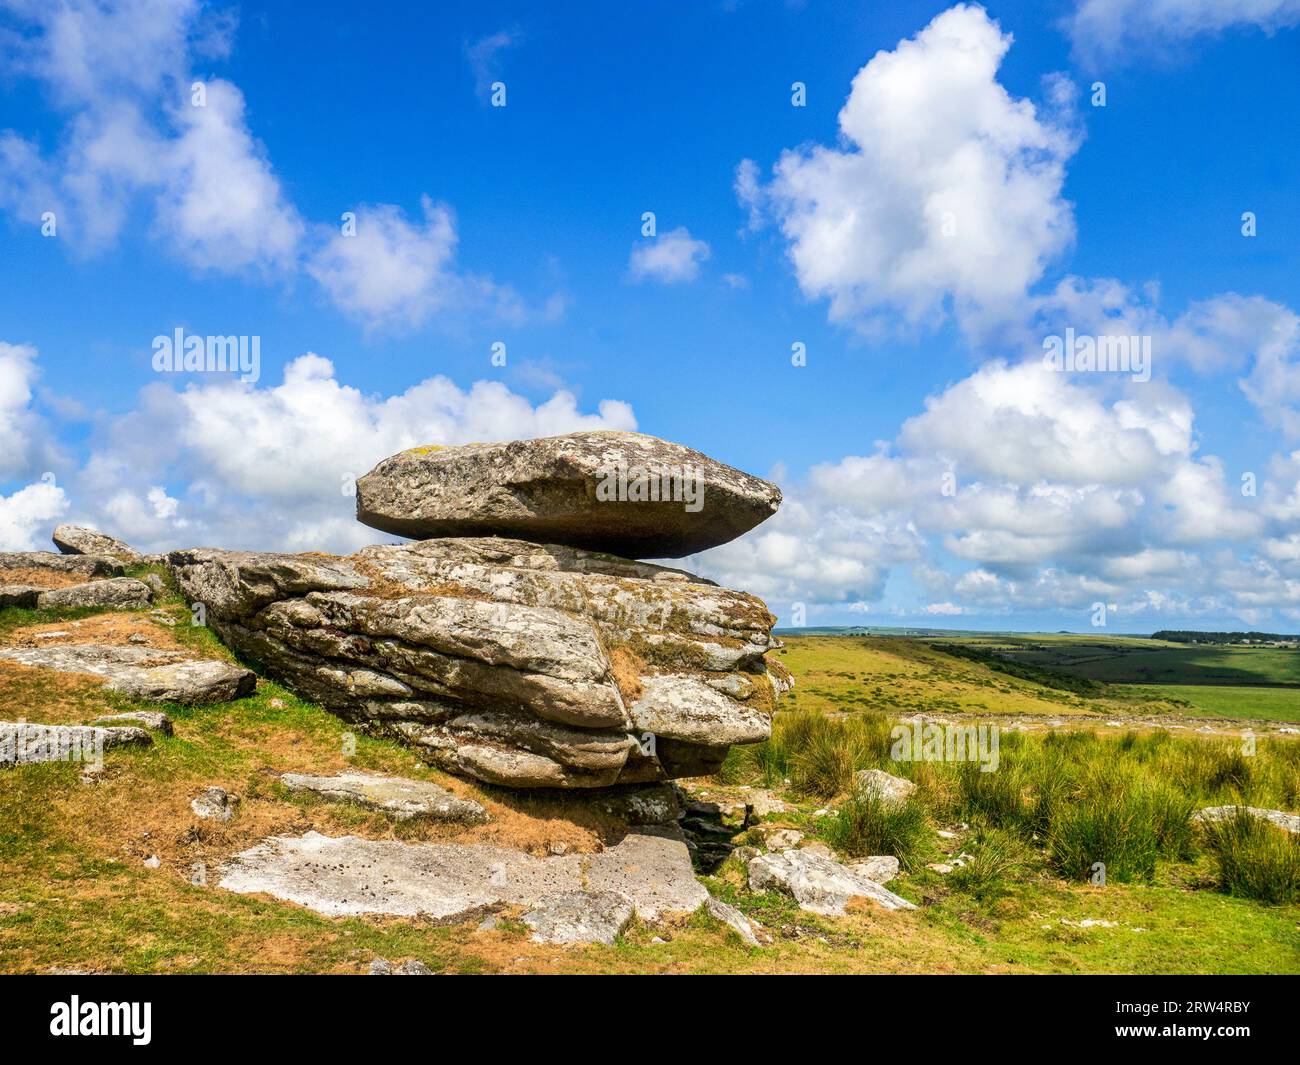 La pierre Logan sur Louden Hill, Bodmin Moor, Cornouailles. Un rocher équilibré qui est si finement équilibré qu'il peut être basculé en poussant vers le bas. Banque D'Images